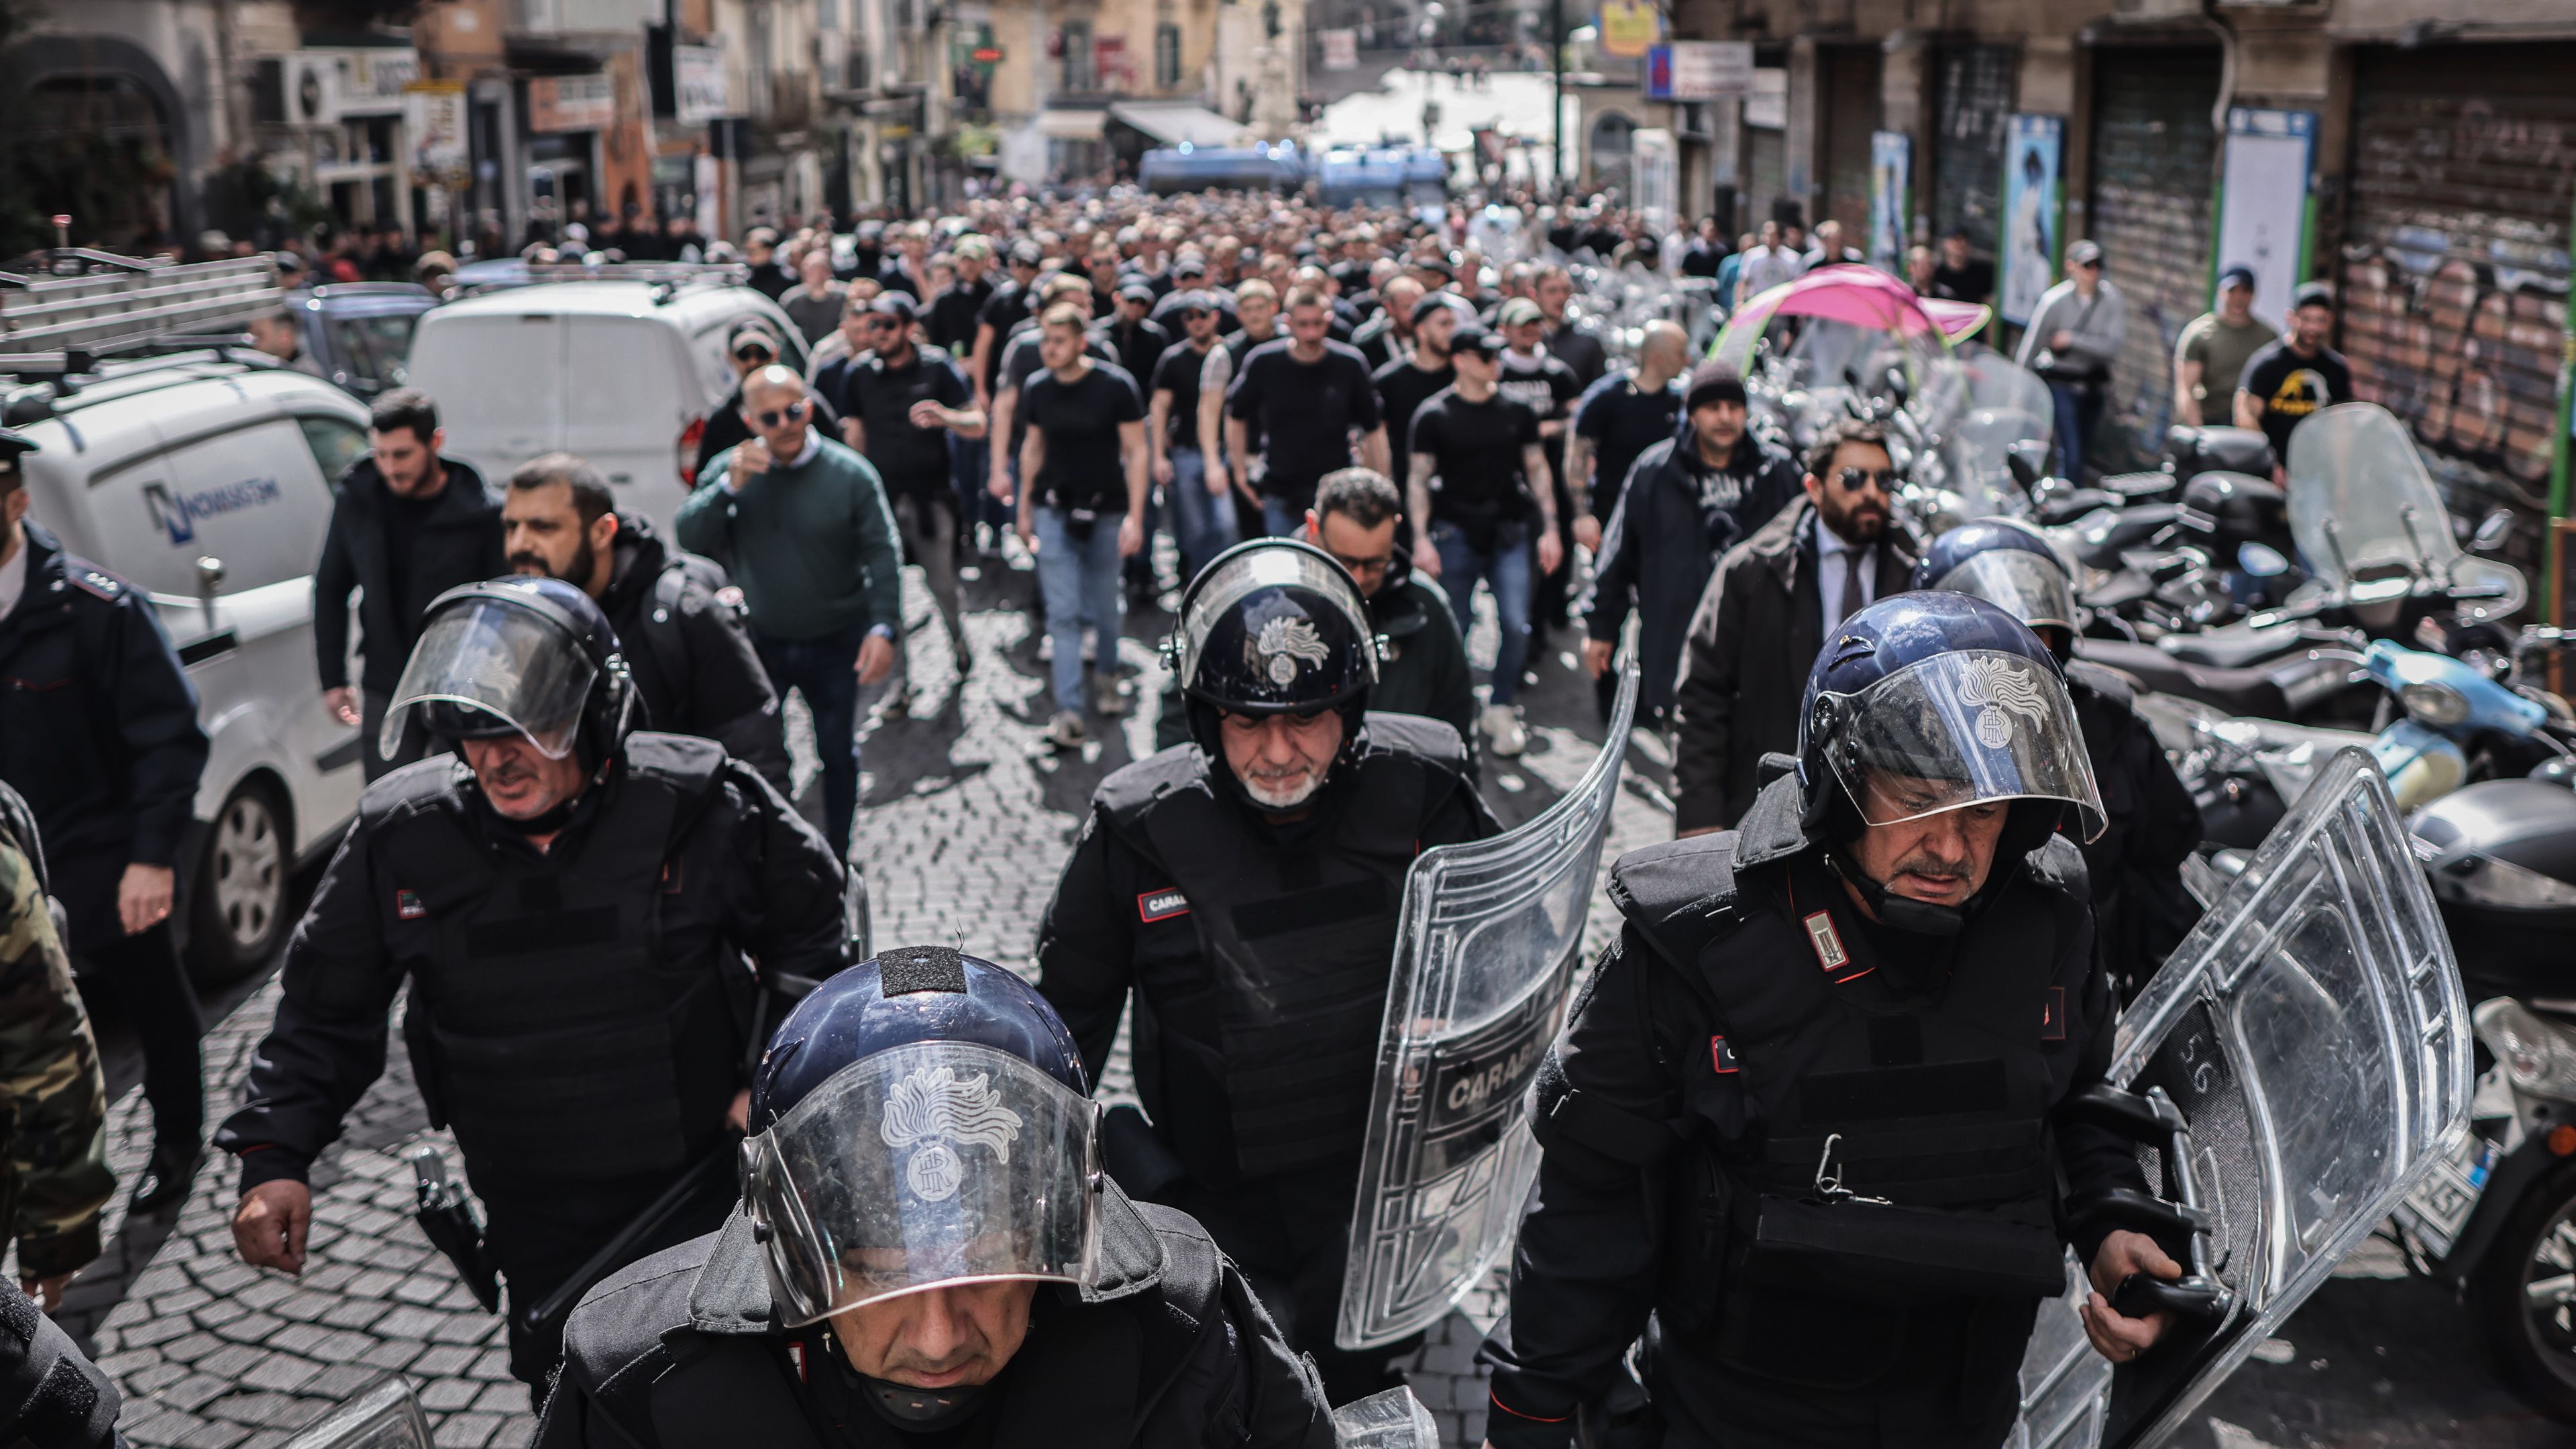 Ezen a képen csak kísérik az olasz rendőrök a Frankfurt szurkolóit